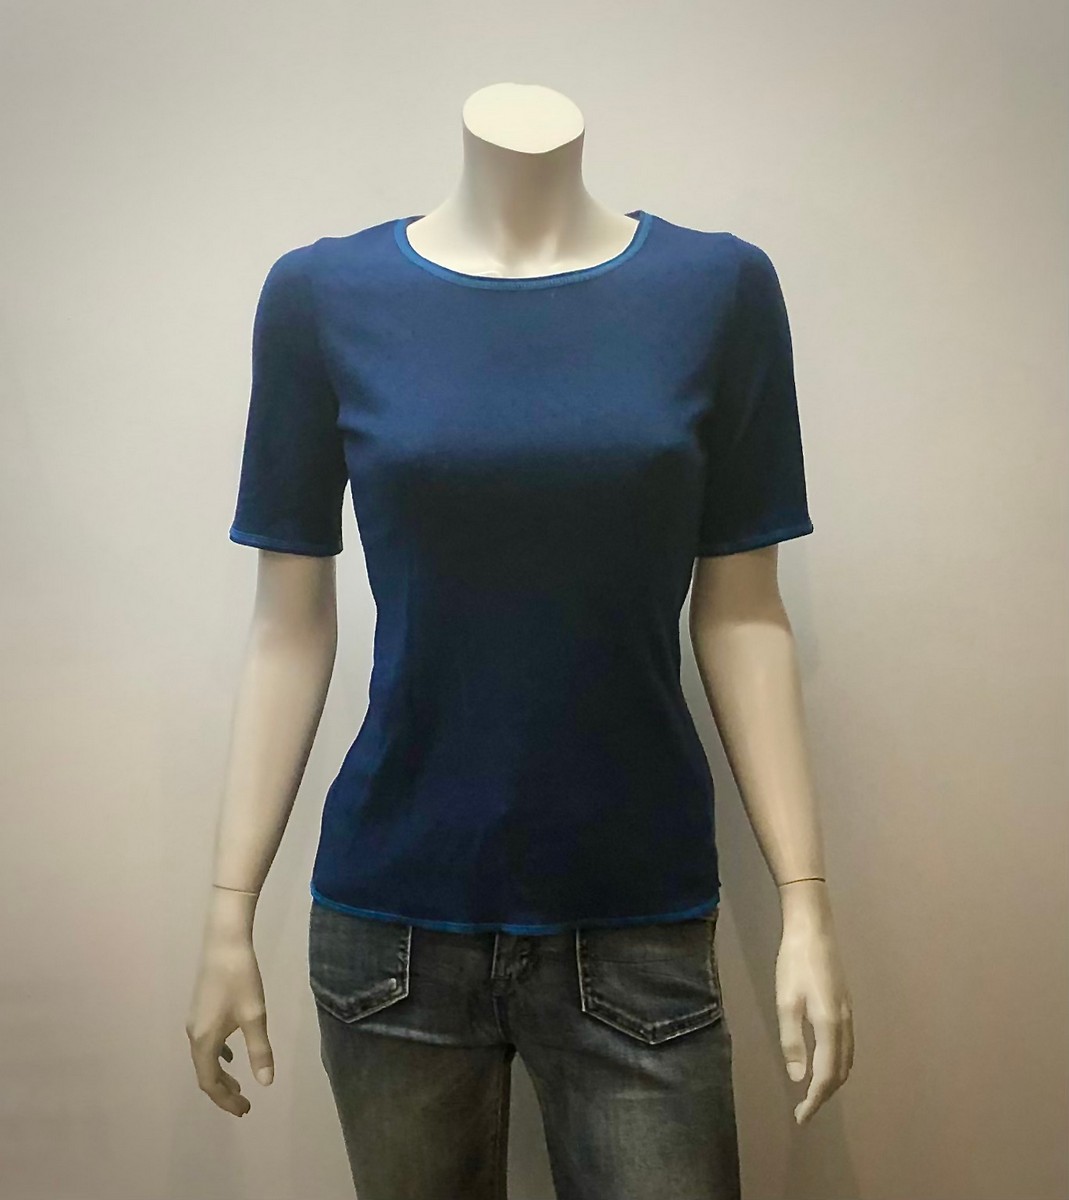 Shirt kurzarm aus 100% Öko-Baumwolle in jeansblau mit türkisen Nähten von Jalfe